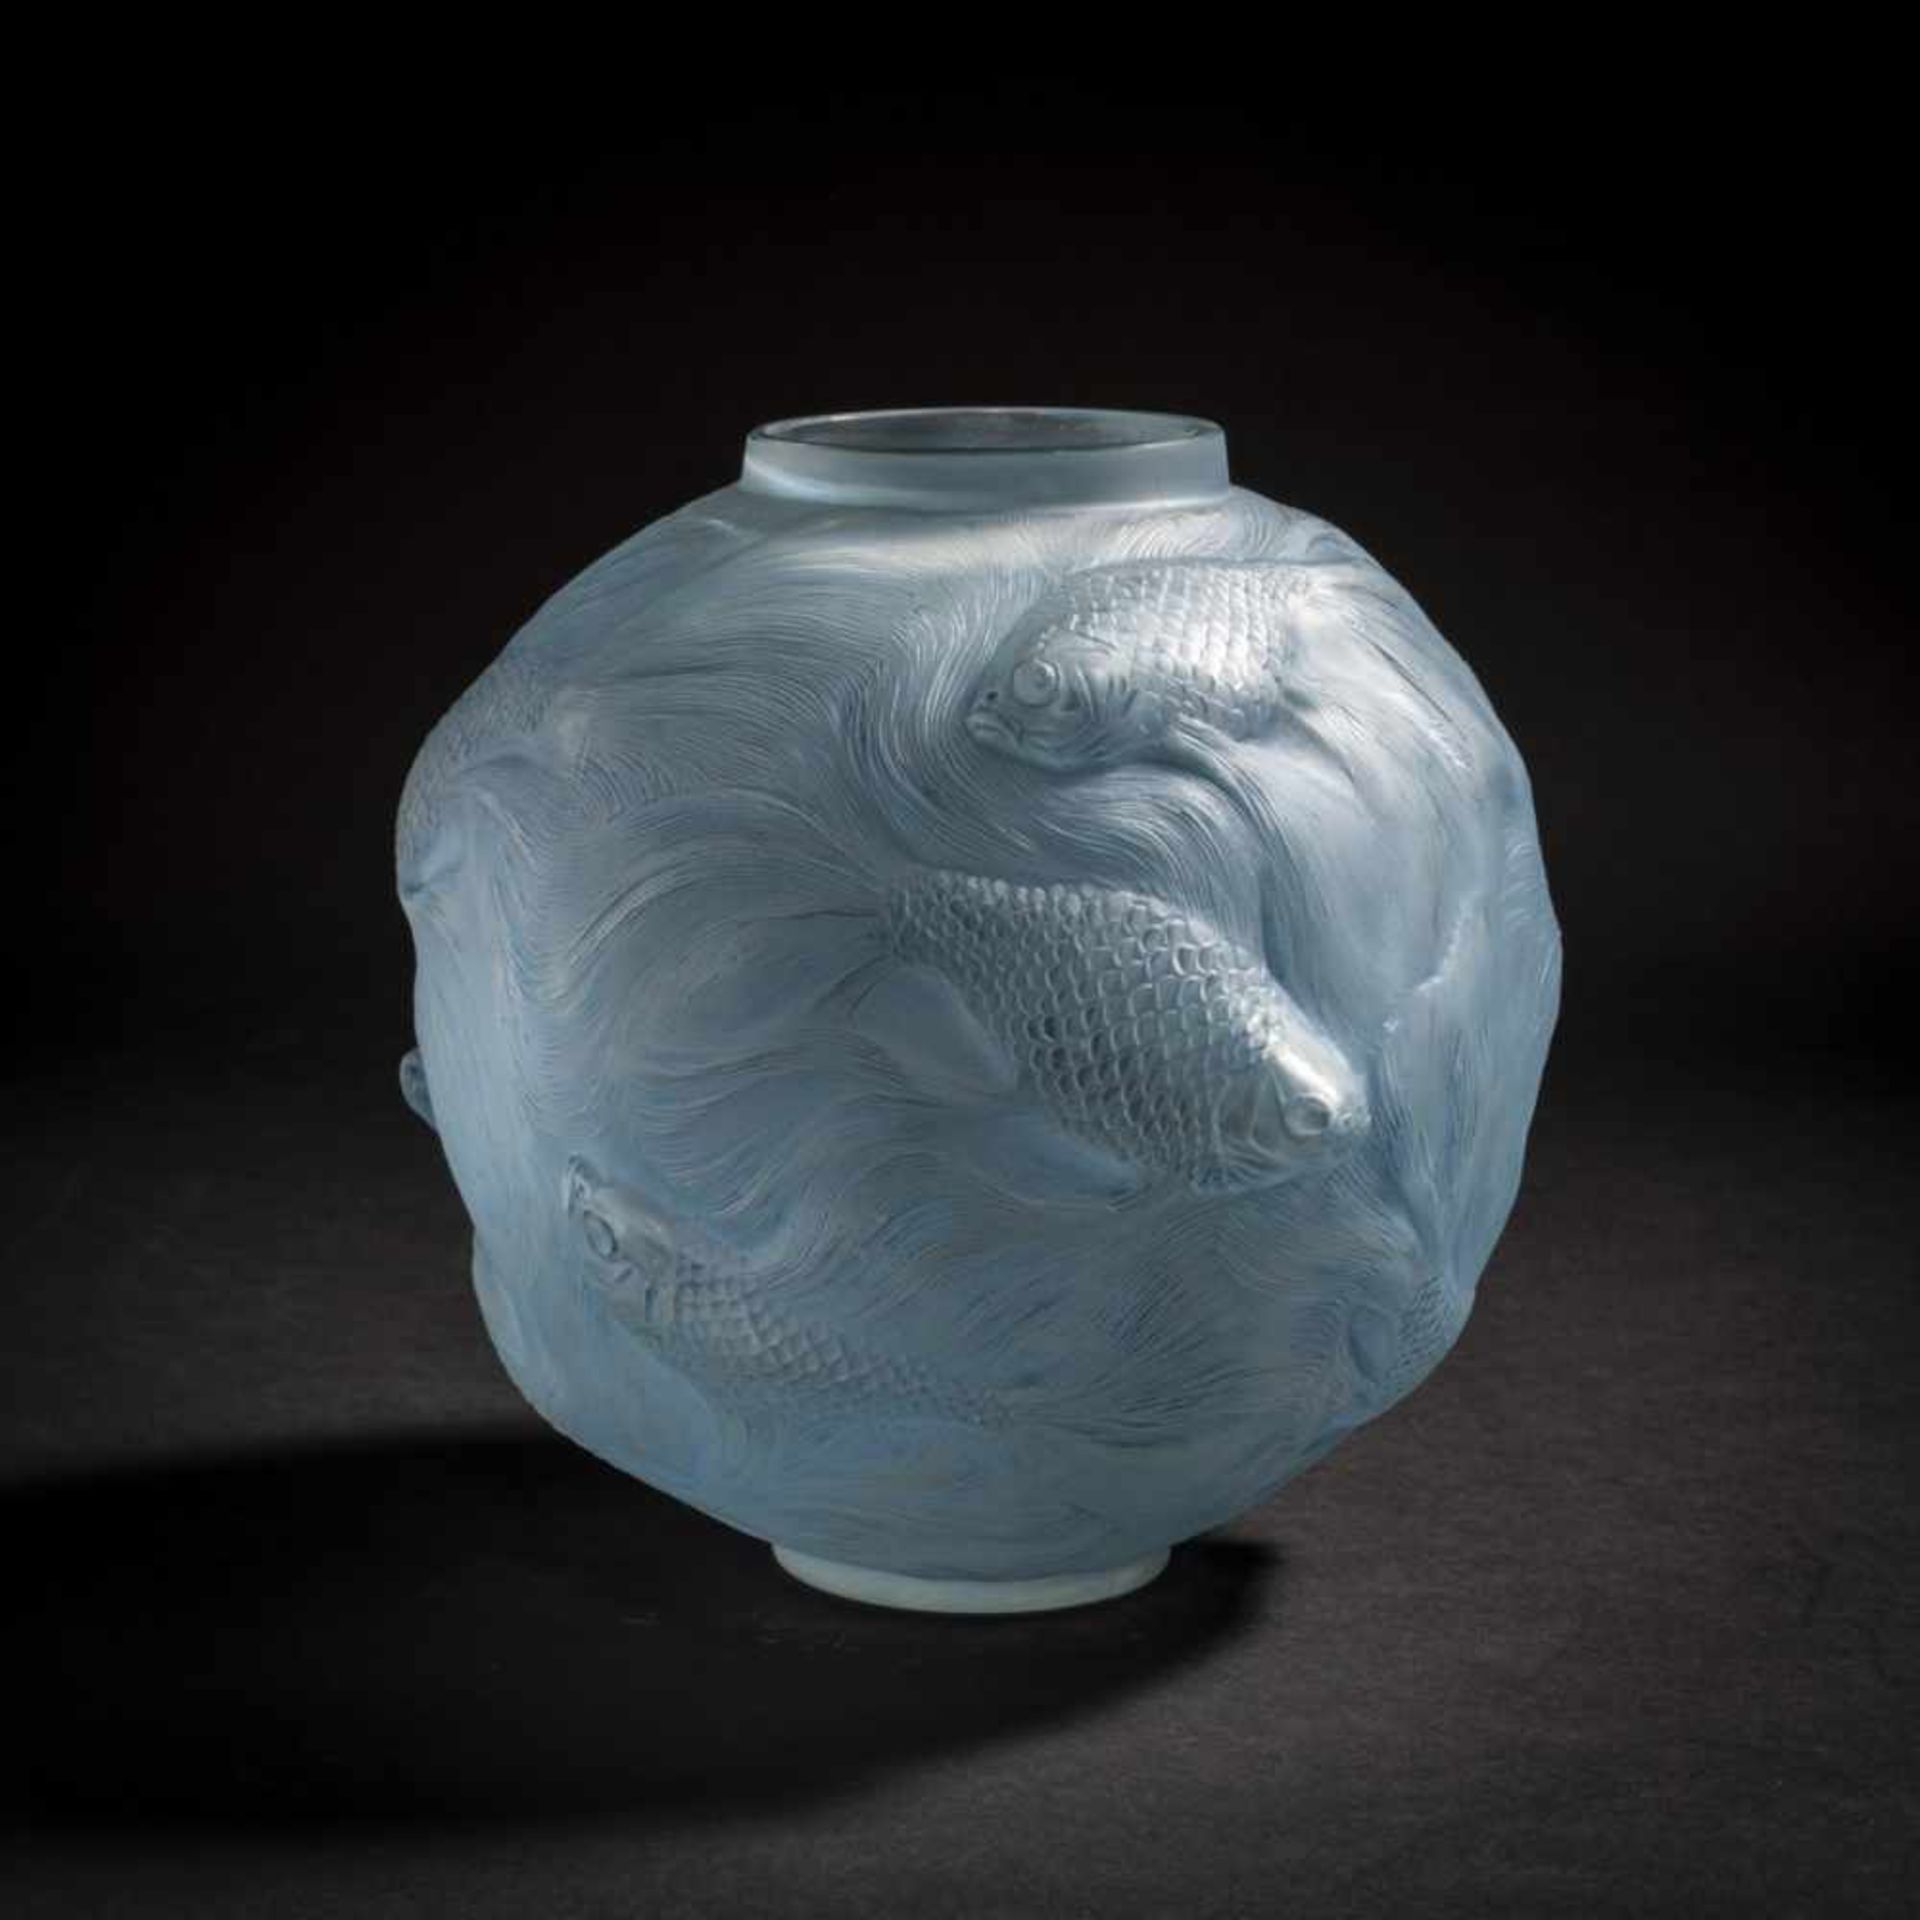 René Lalique, 'Formose' vase, 1924'Formose' vase, 1924H. 17 cm. Clear, mould-blown glass, satined,